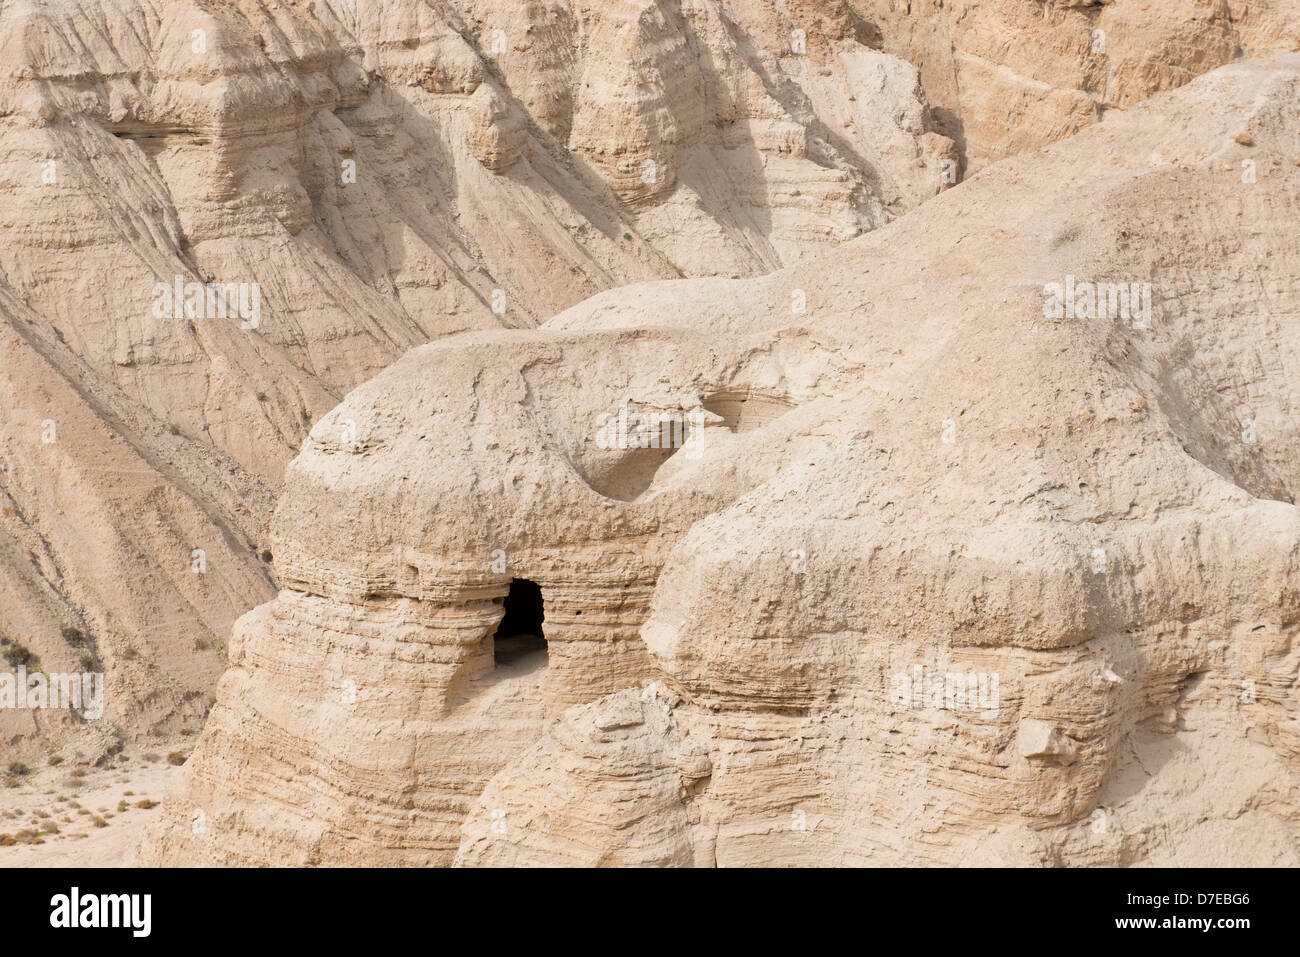 Qumrân, site de la découverte des manuscrits de la Mer Morte, Israël Banque D'Images